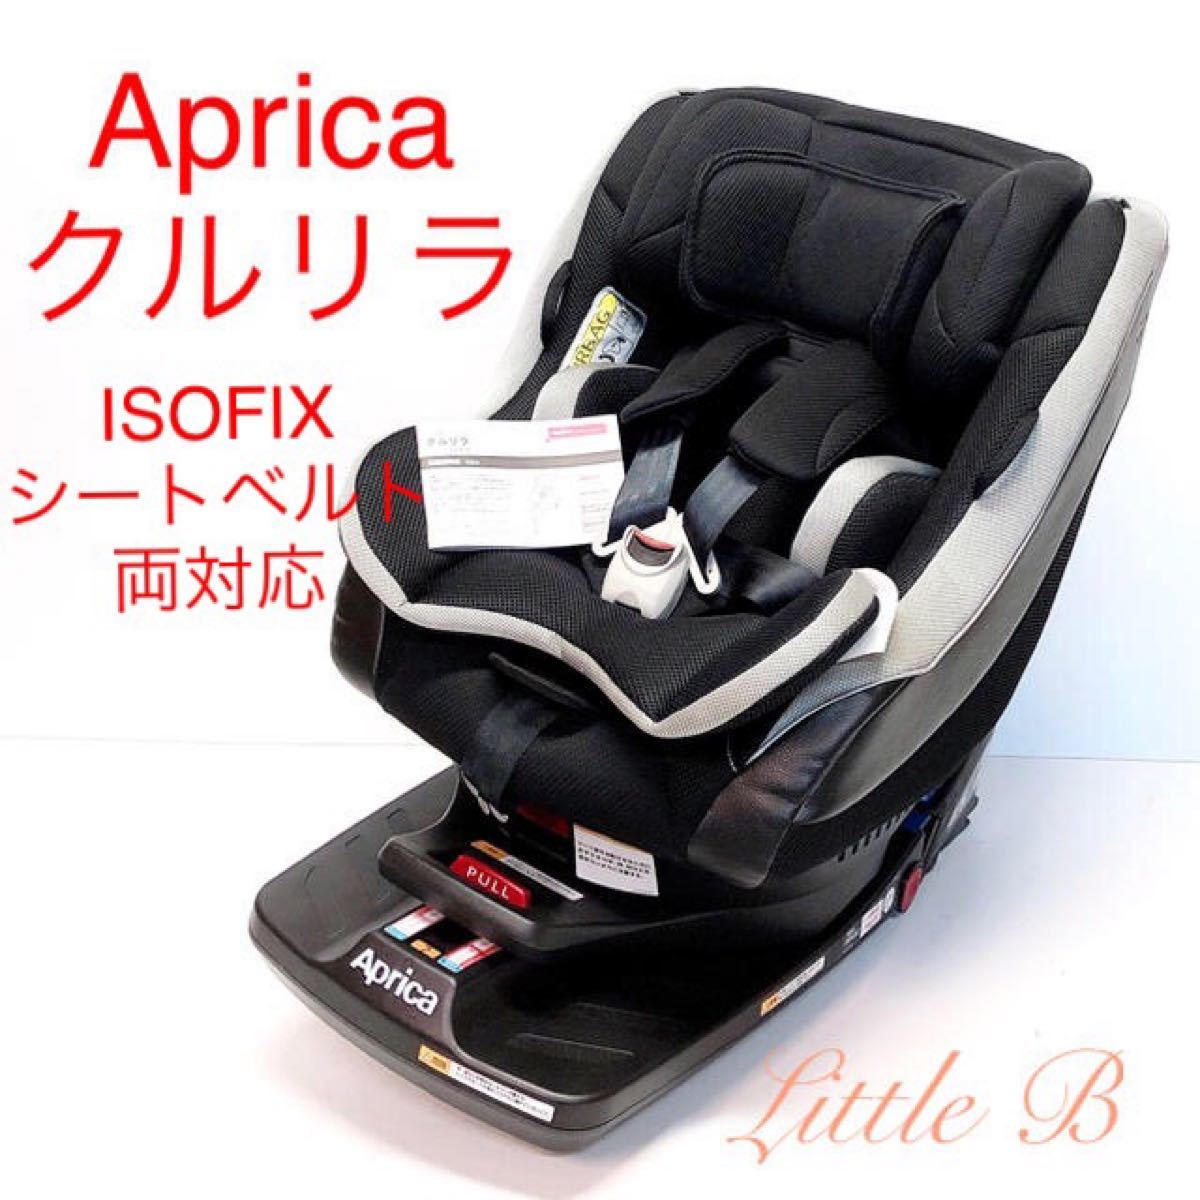 【美品】ISOFIX対応アップリカ*クルリラ*新生児対応/回転式チャイルドシート